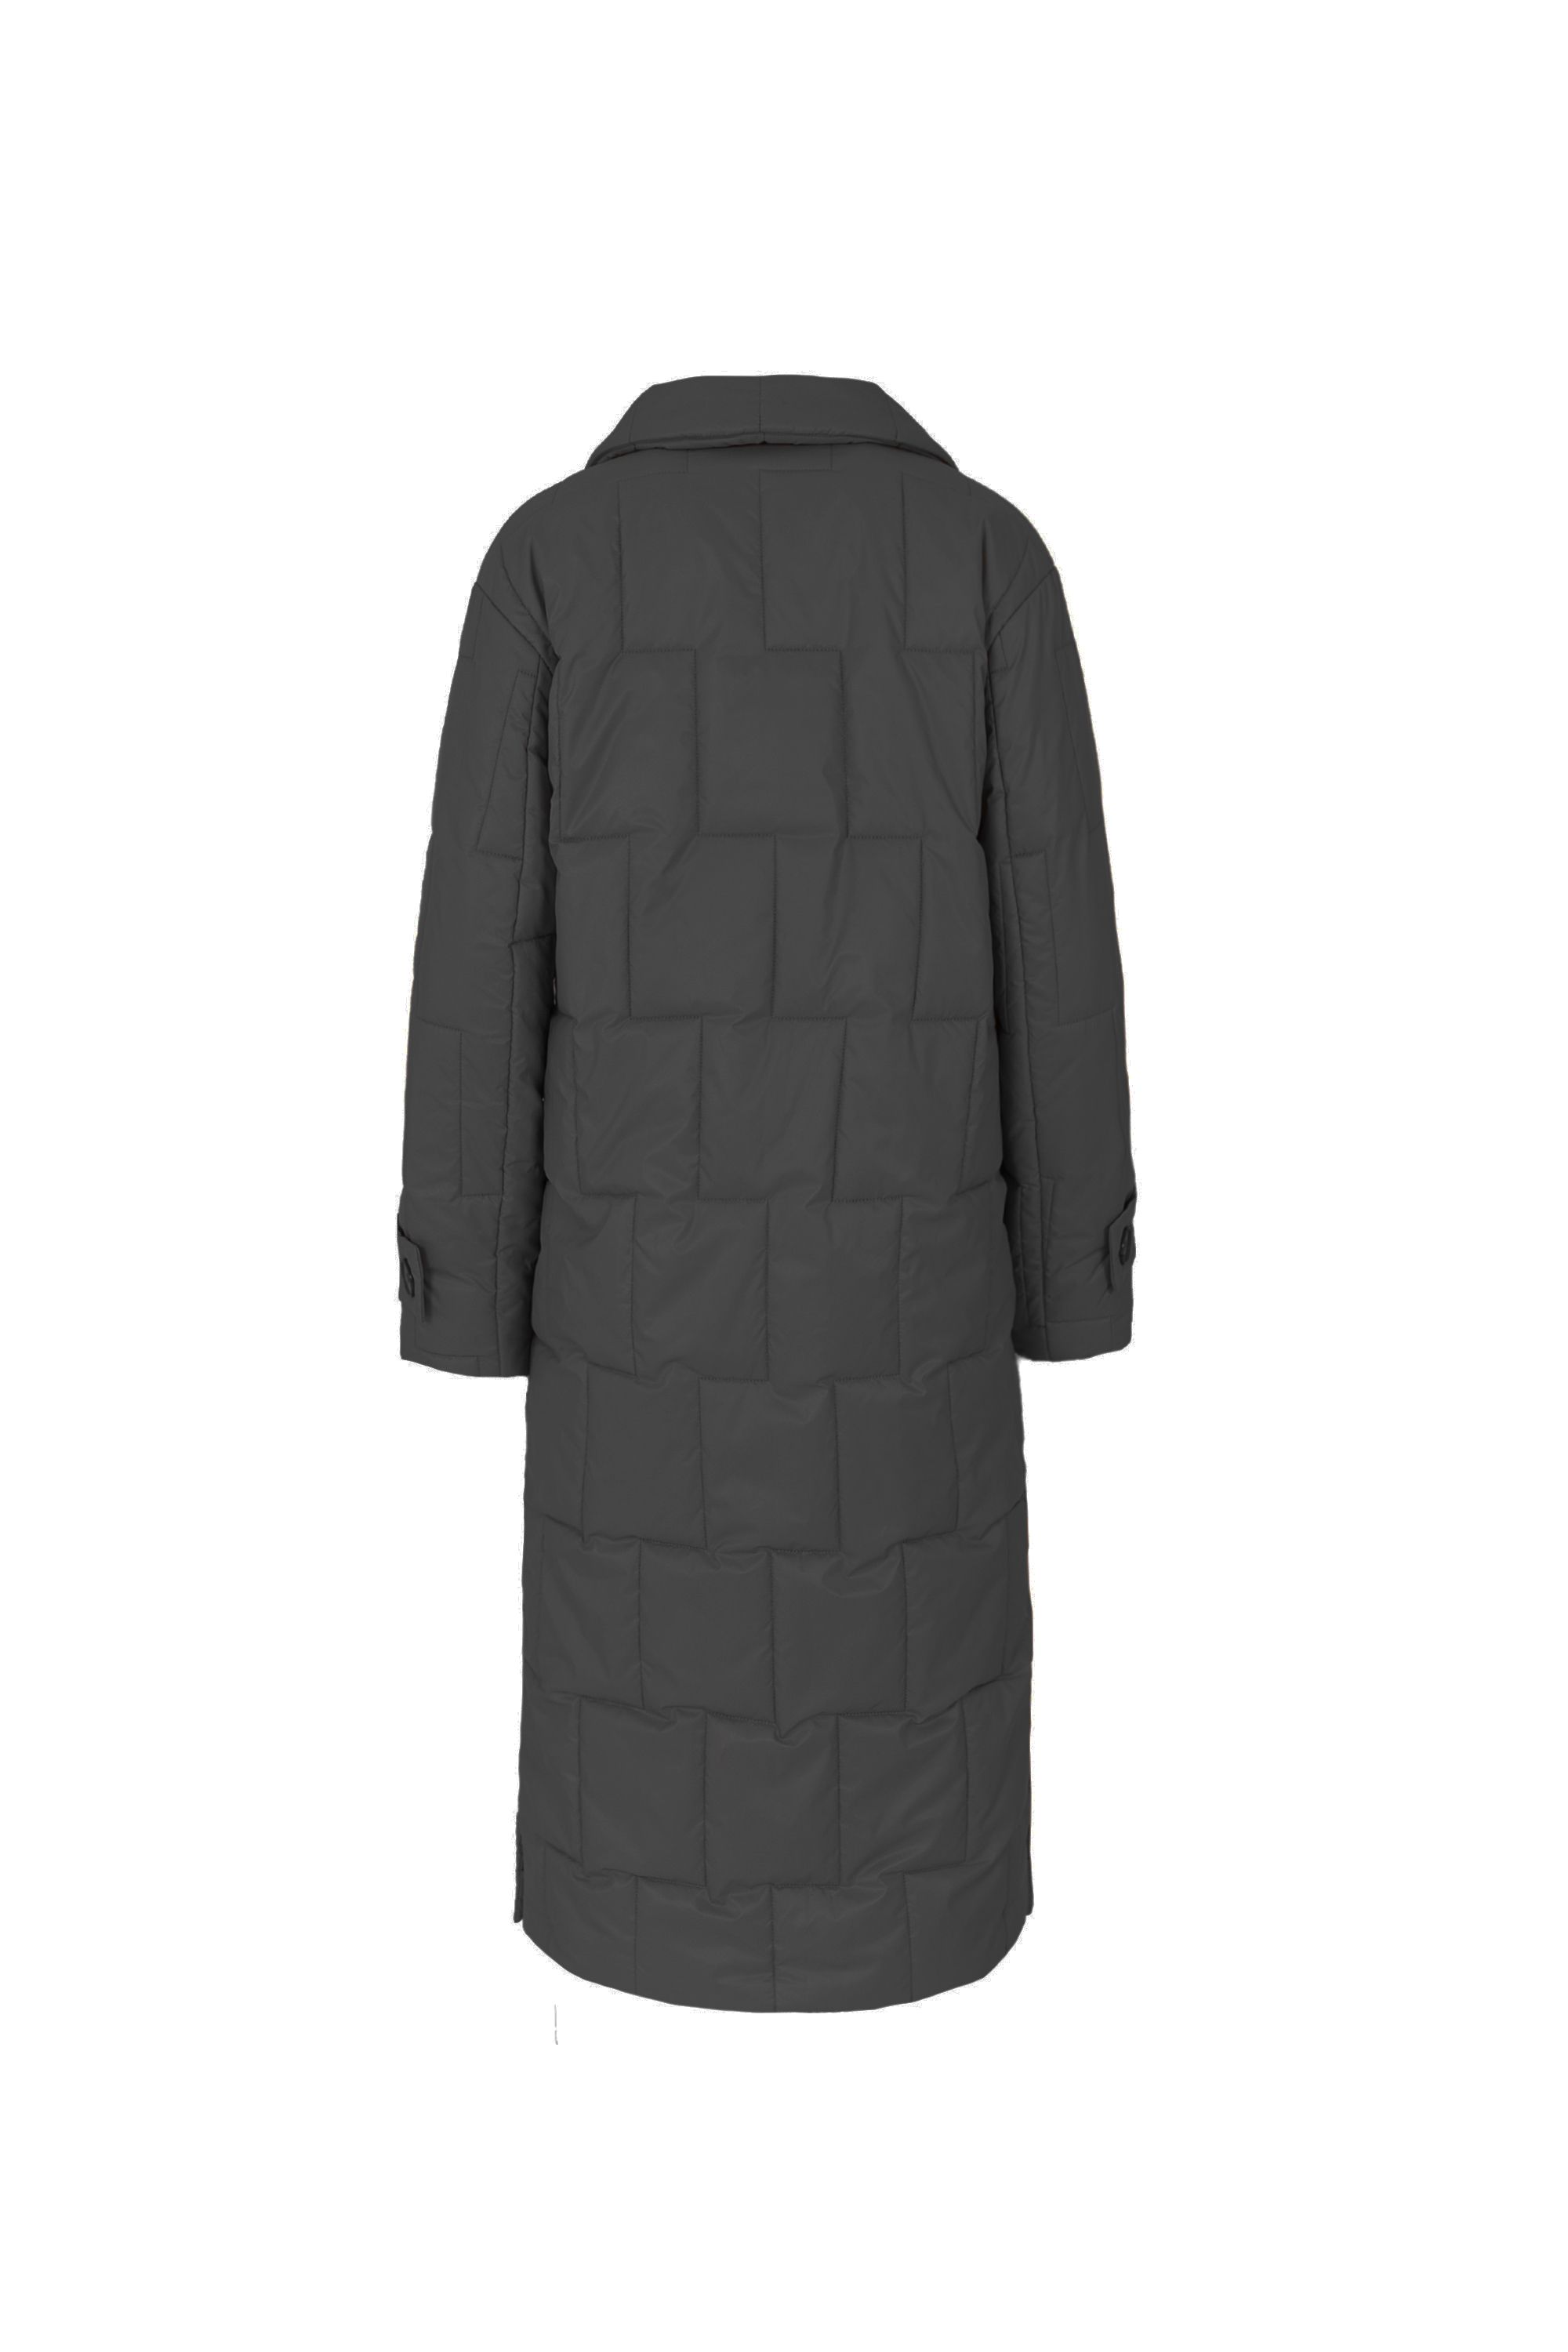 Пальто женское плащевое утепленное 5-12593-1. Фото 6.